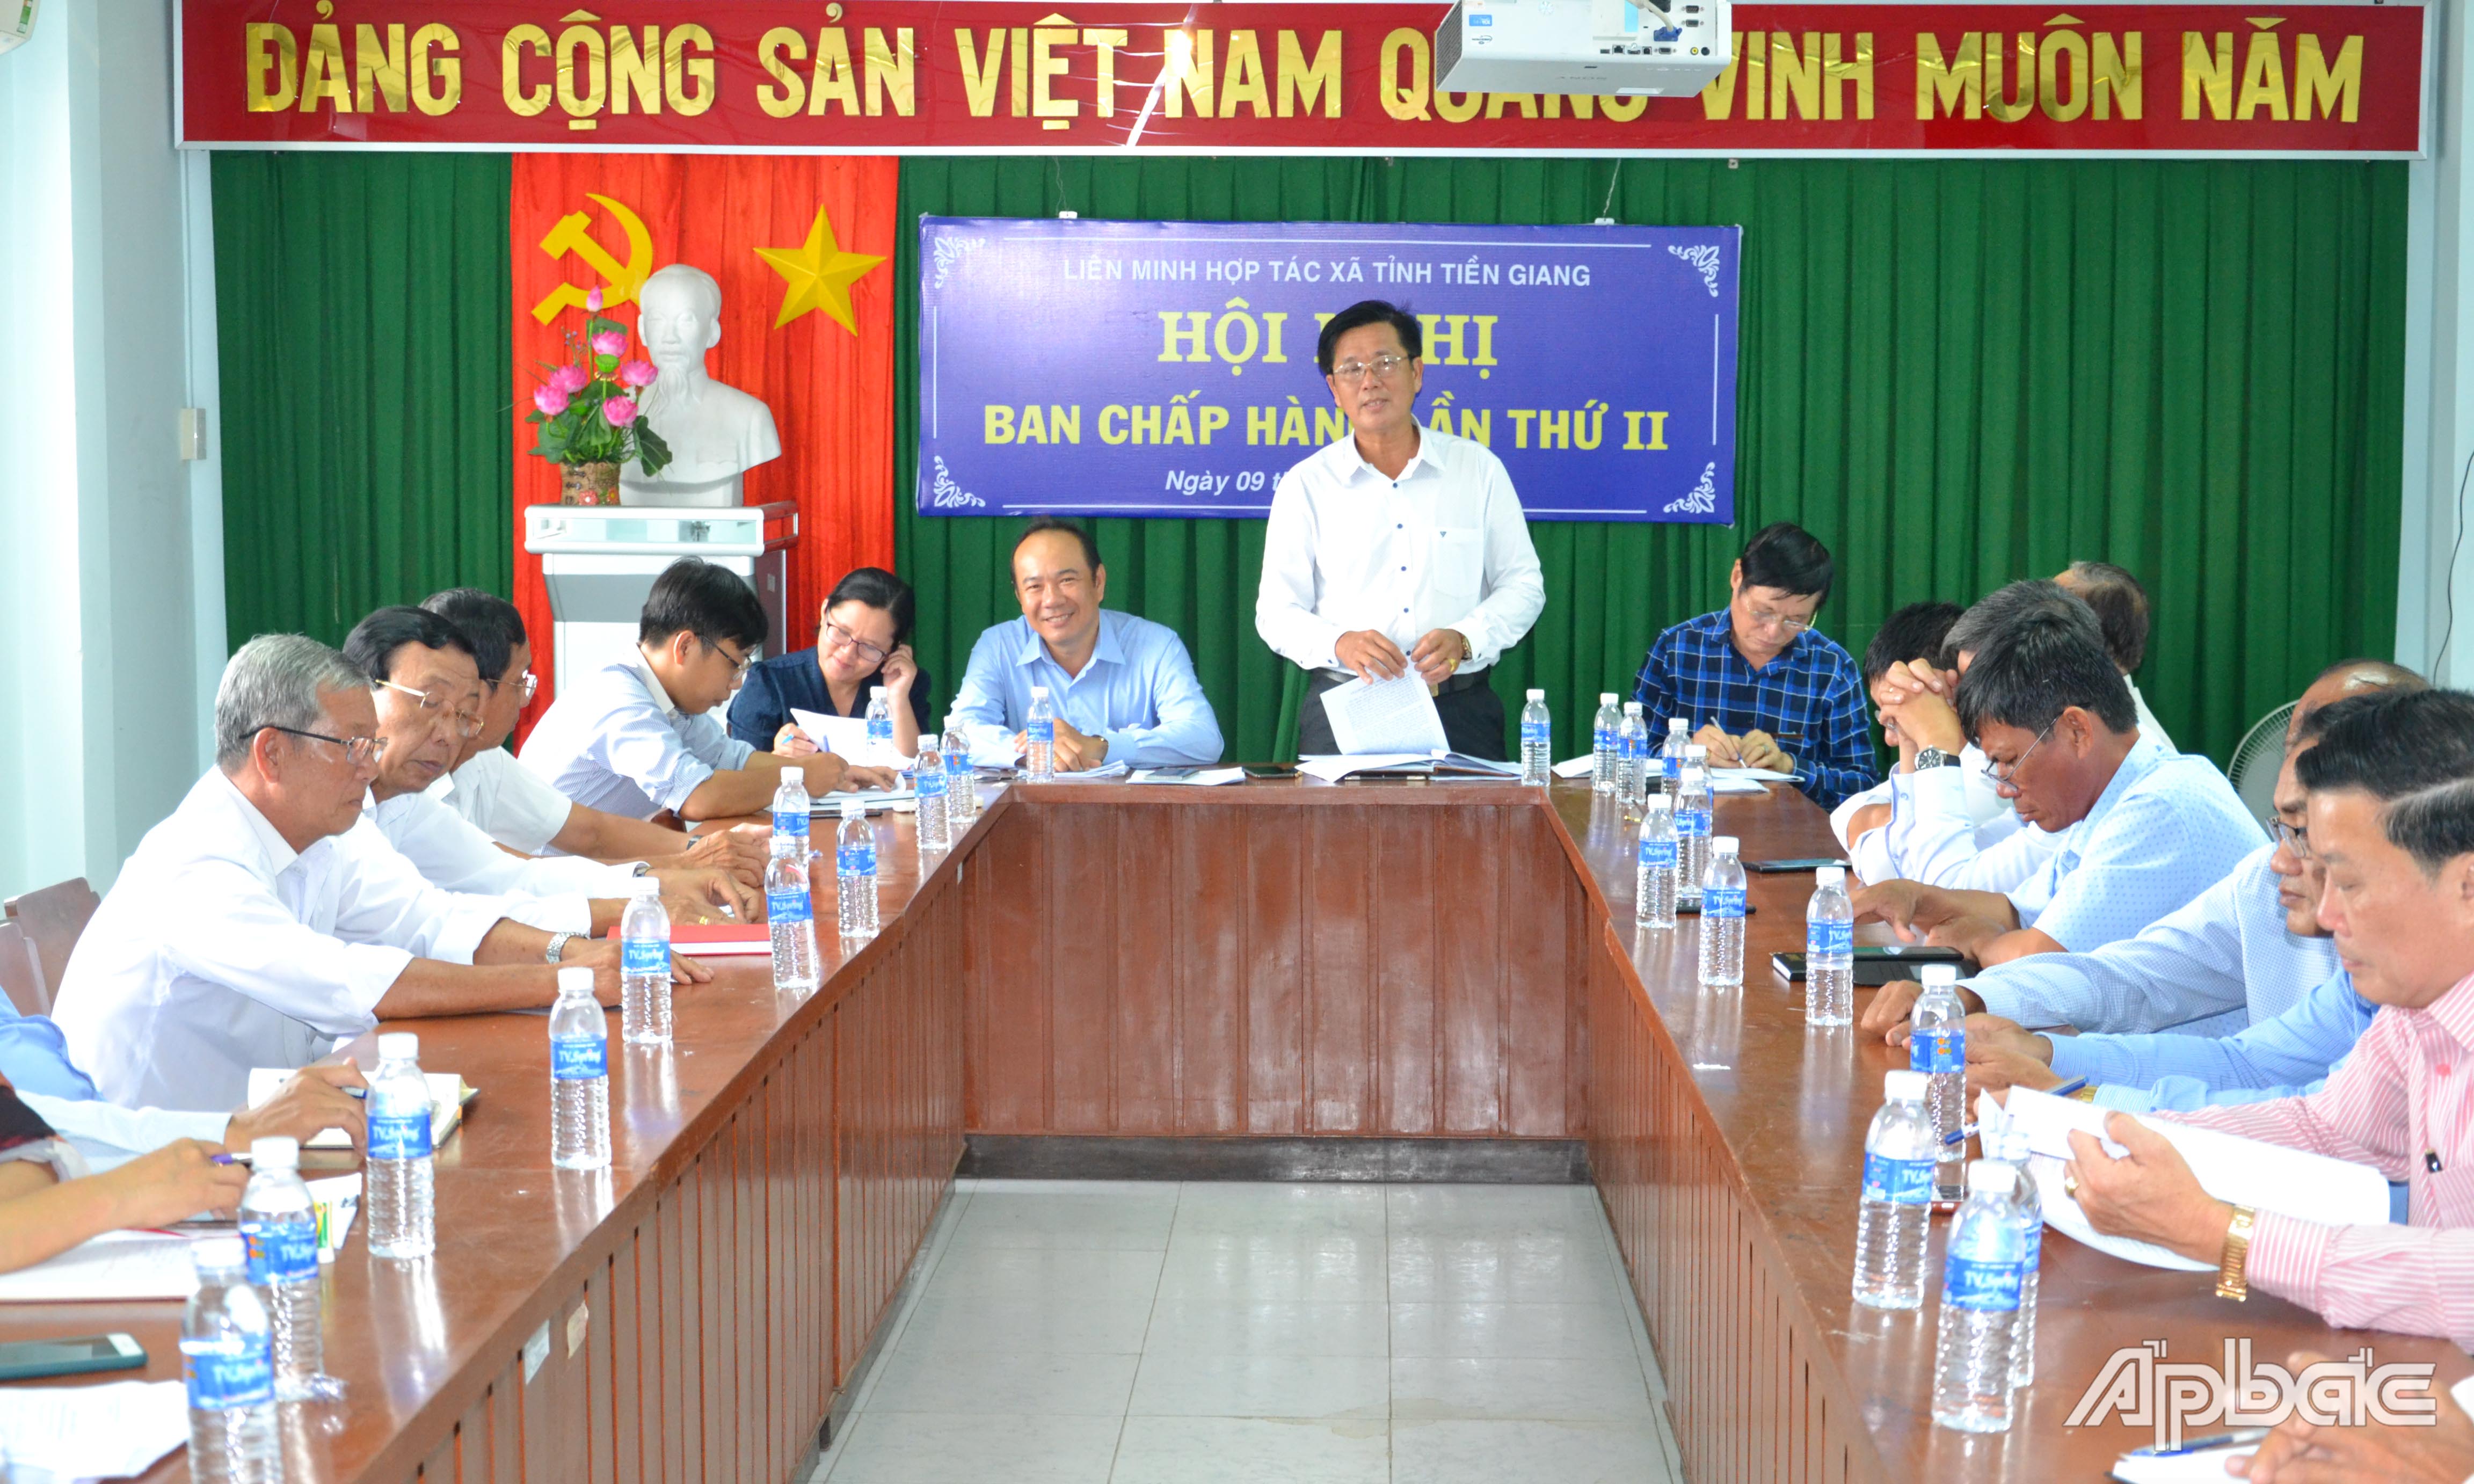 Quang cảnh hội nghị Ban Chấp hành Liên minh HTX tỉnh Tiền Giang lần thứ II.